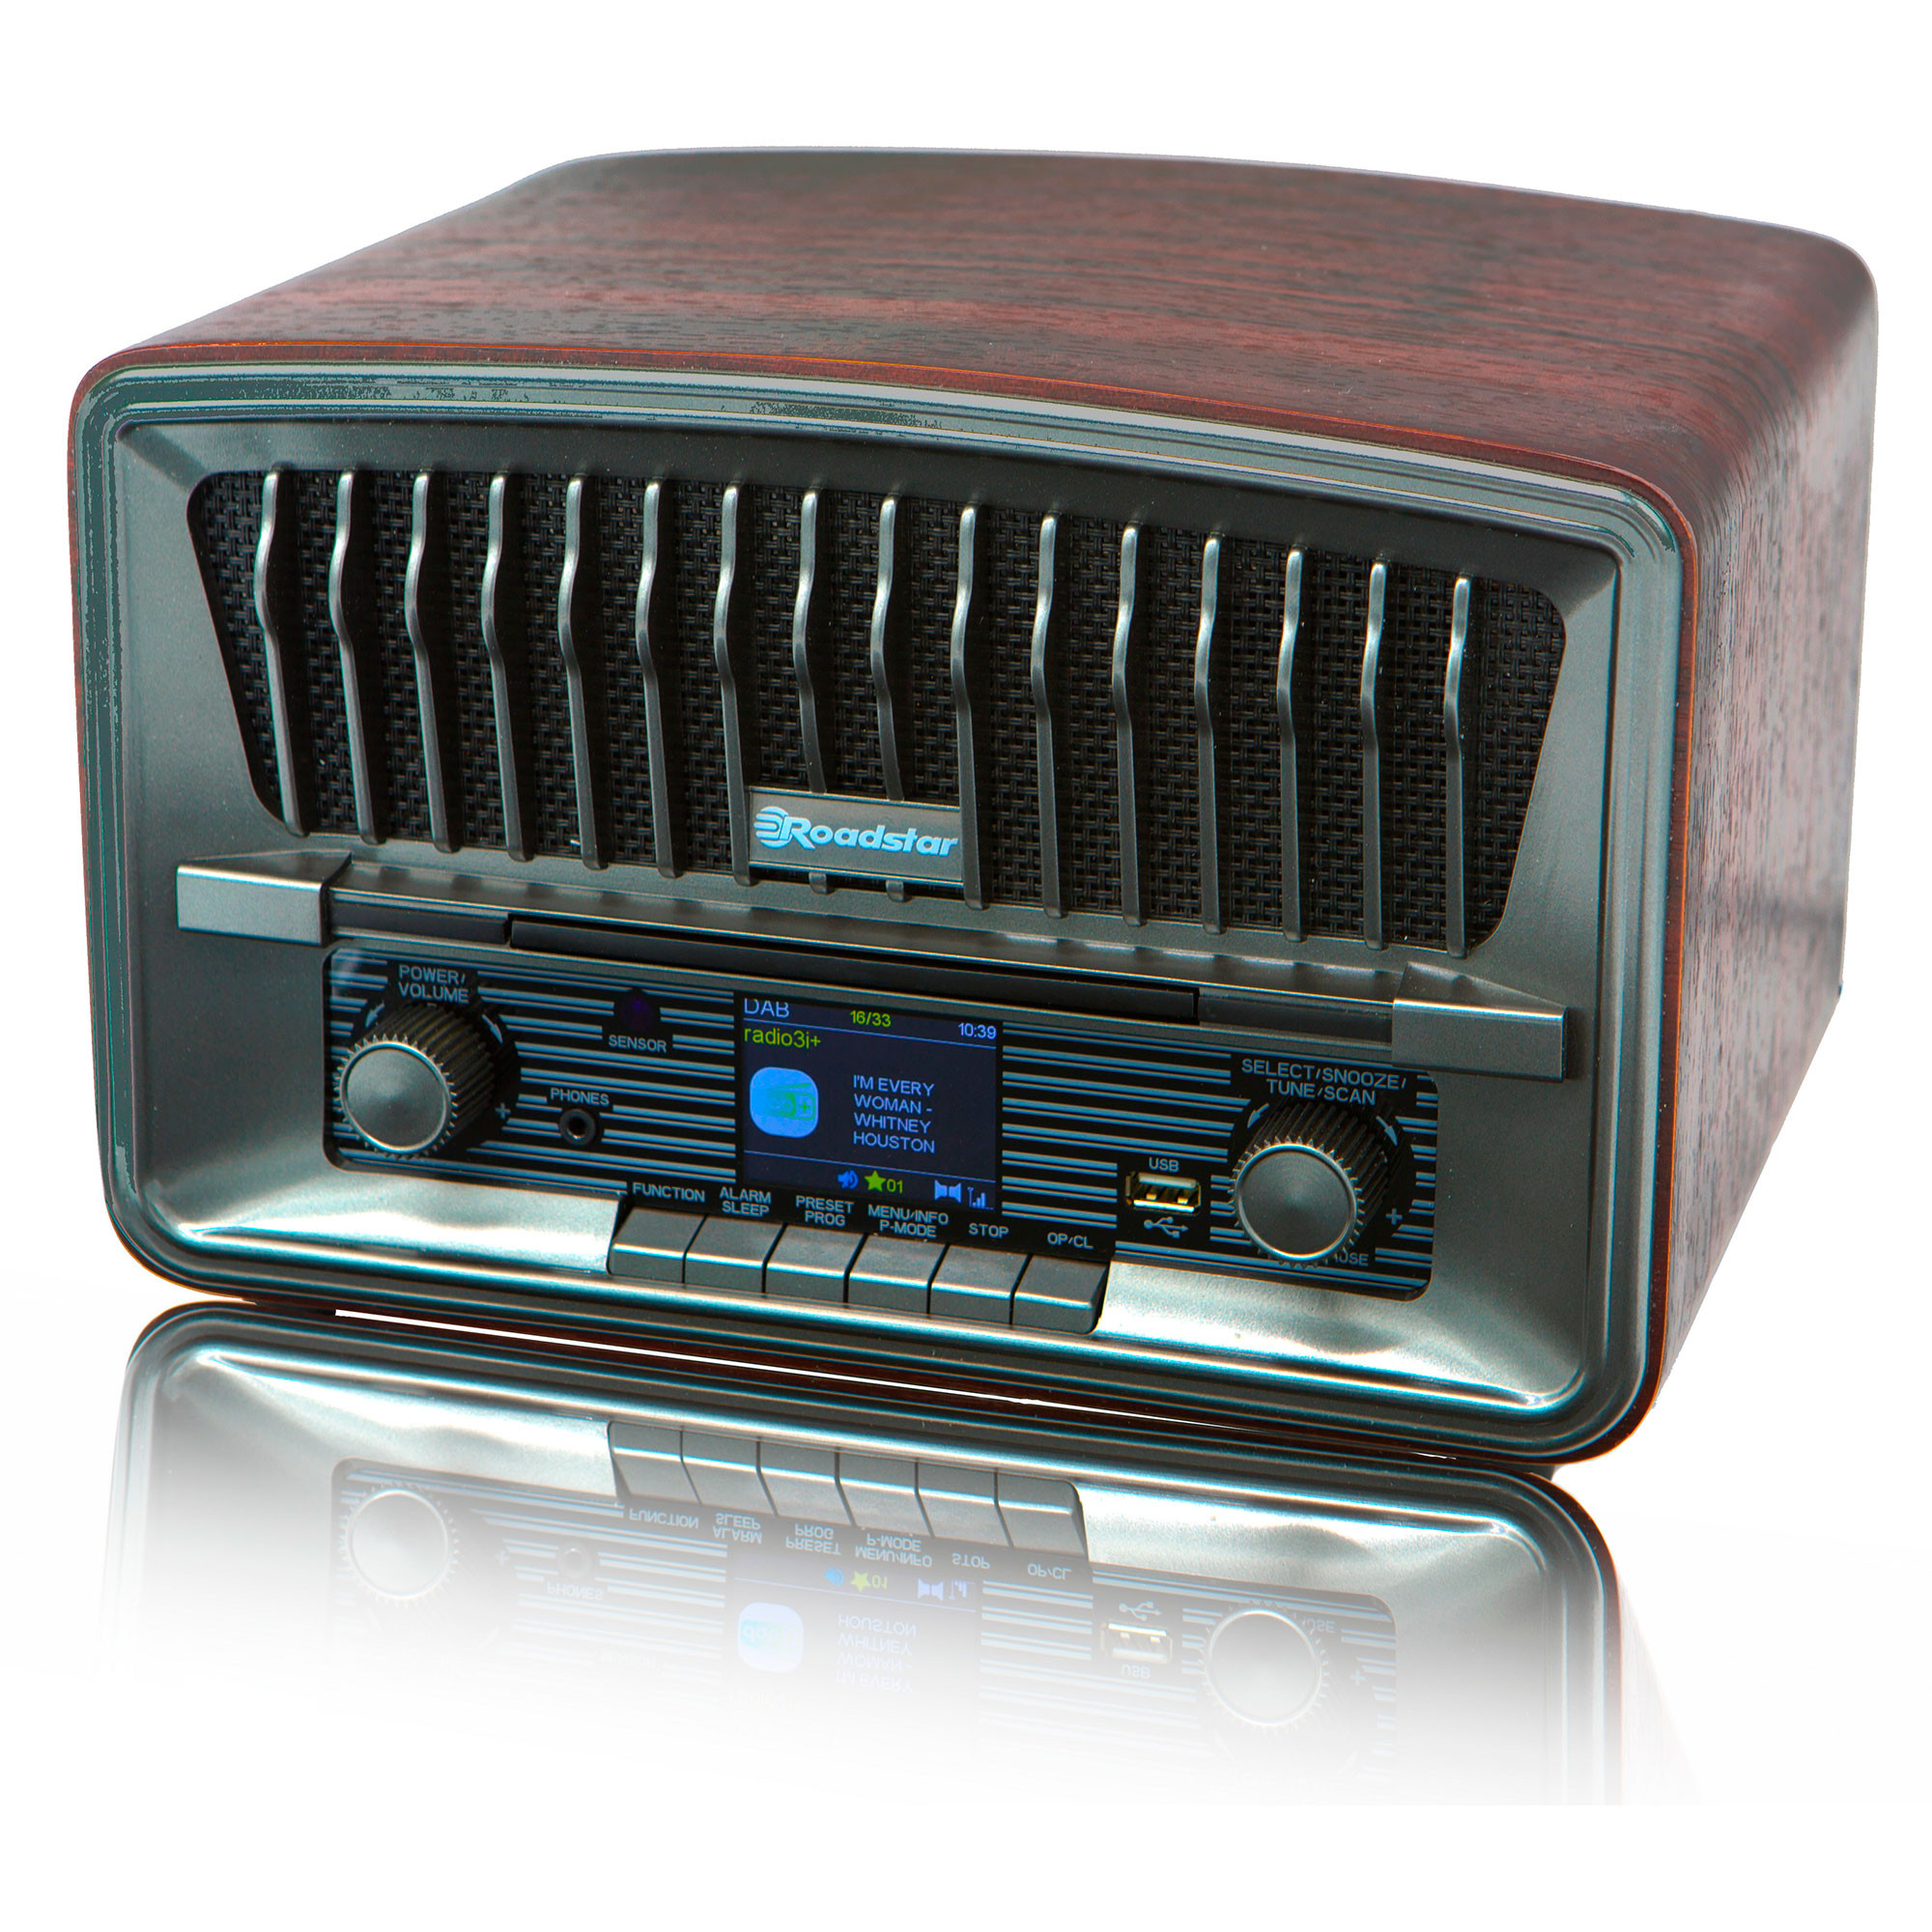 Roadstar RCR-779D+/BK Radio Portátil DAB DAB+ FM, Reproductor CD